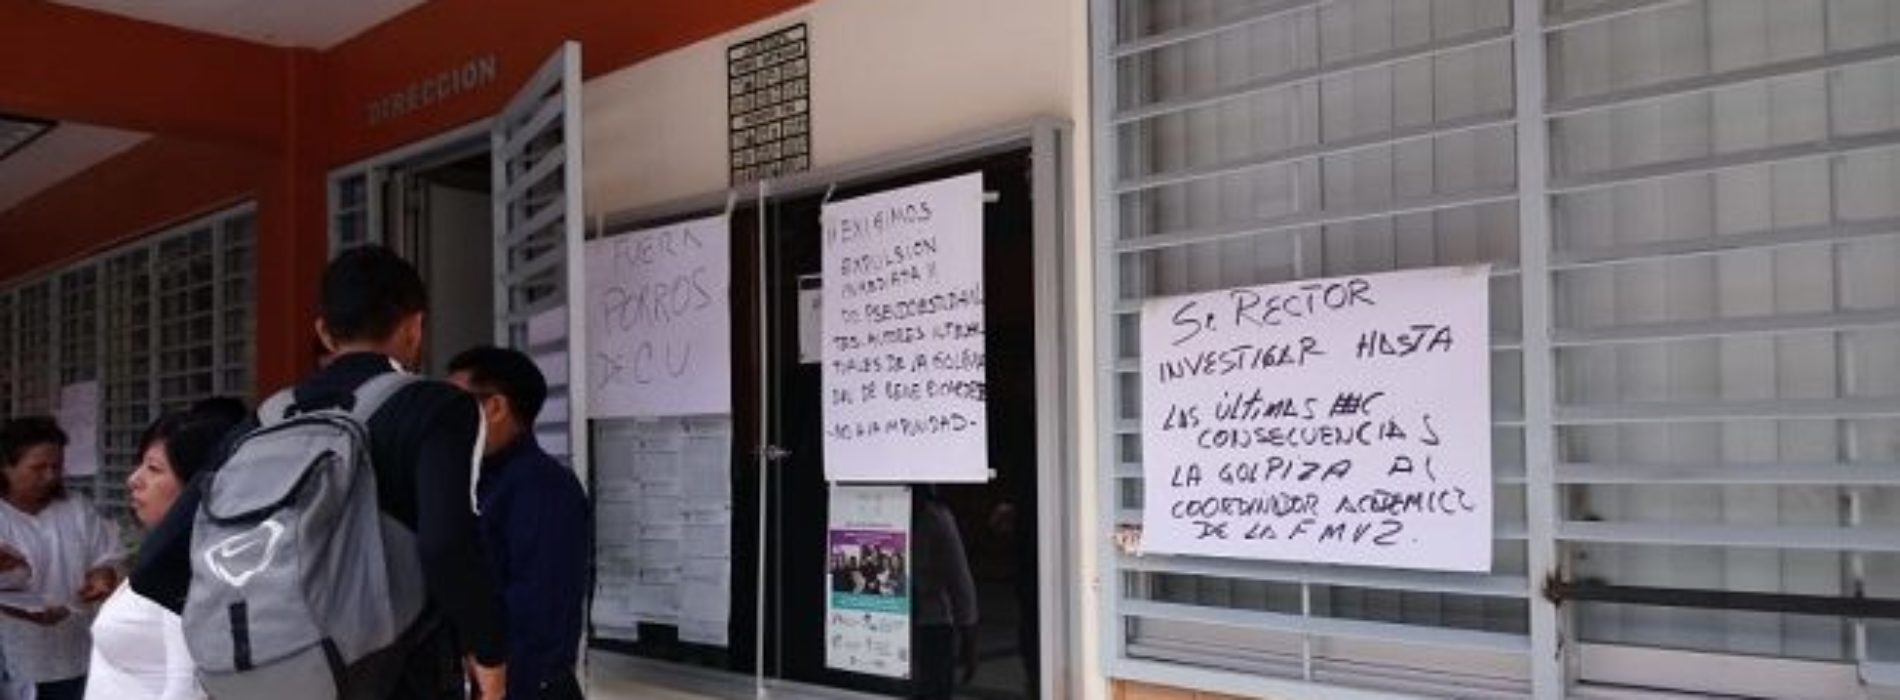 Porros golpean a coordinador académico de Veterinaria de la
UABJO